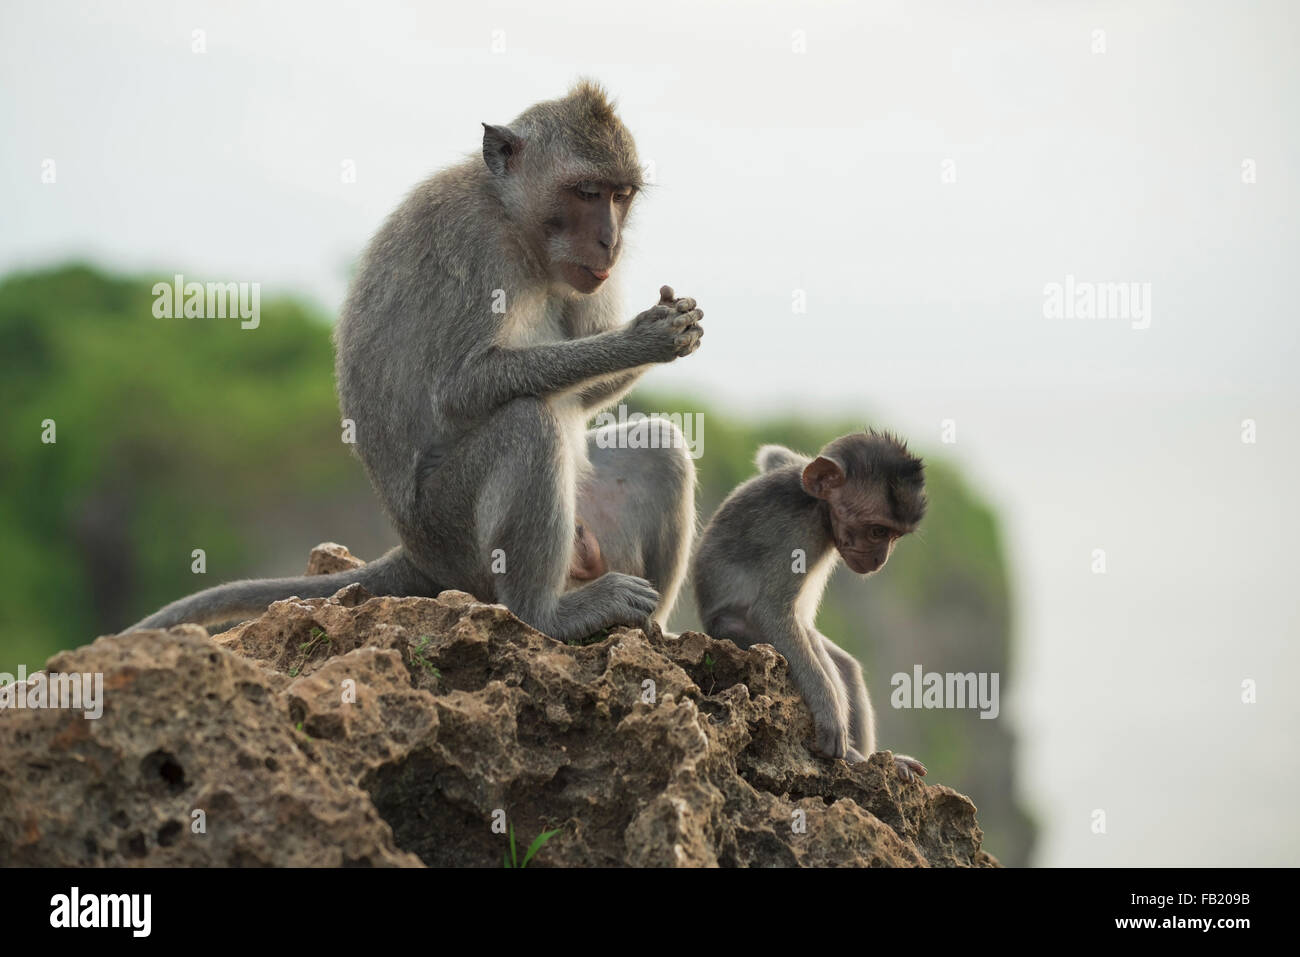 La scena della fauna selvatica, le scimmie selvatiche seduto sulla roccia nel loro habitat naturale con la giungla sullo sfondo della natura. Foto Stock